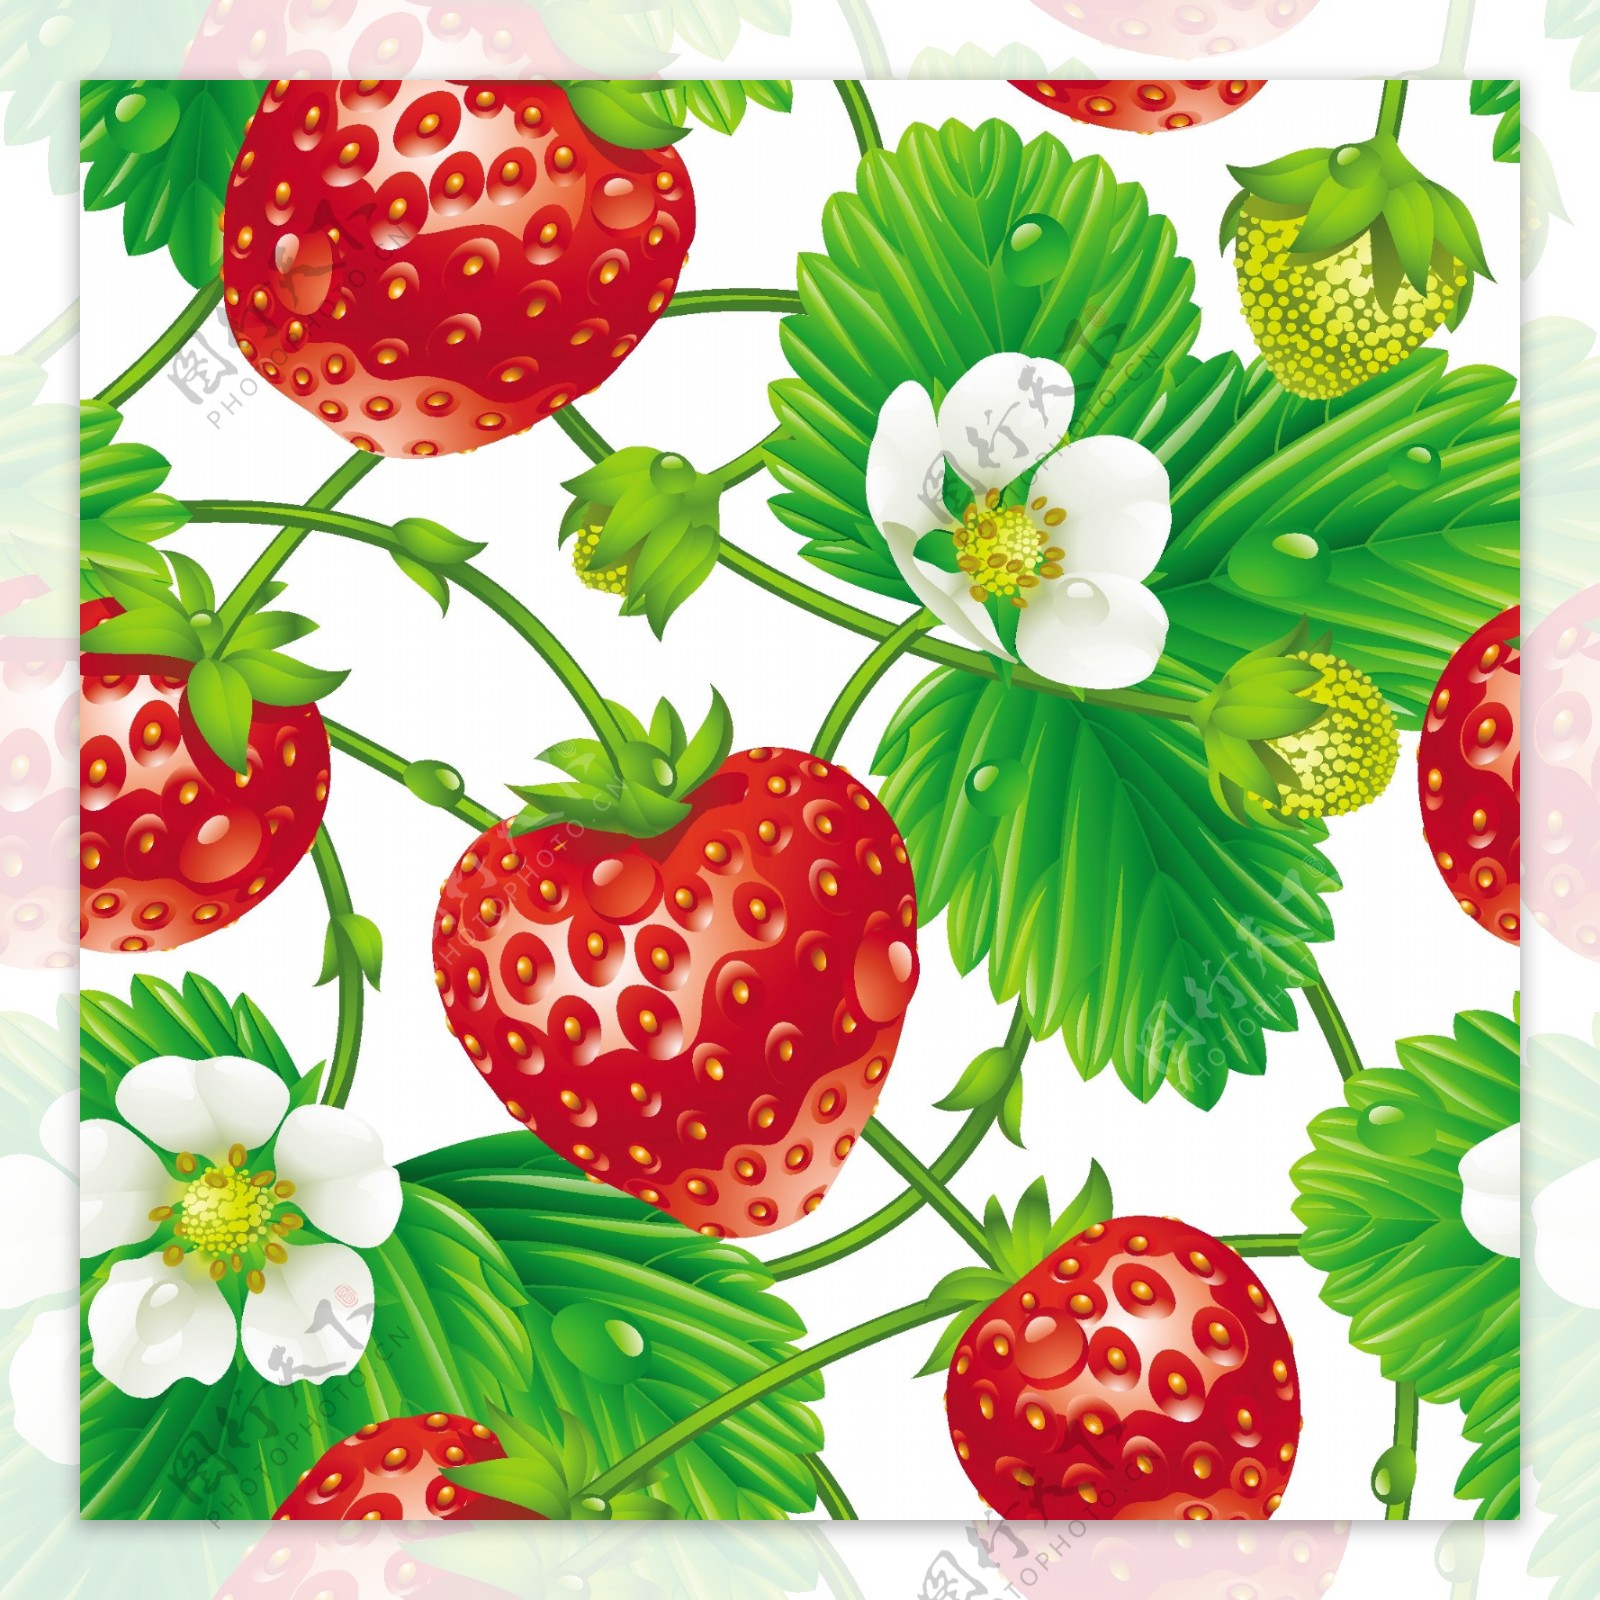 新鲜的草莓和草莓花矢量素材